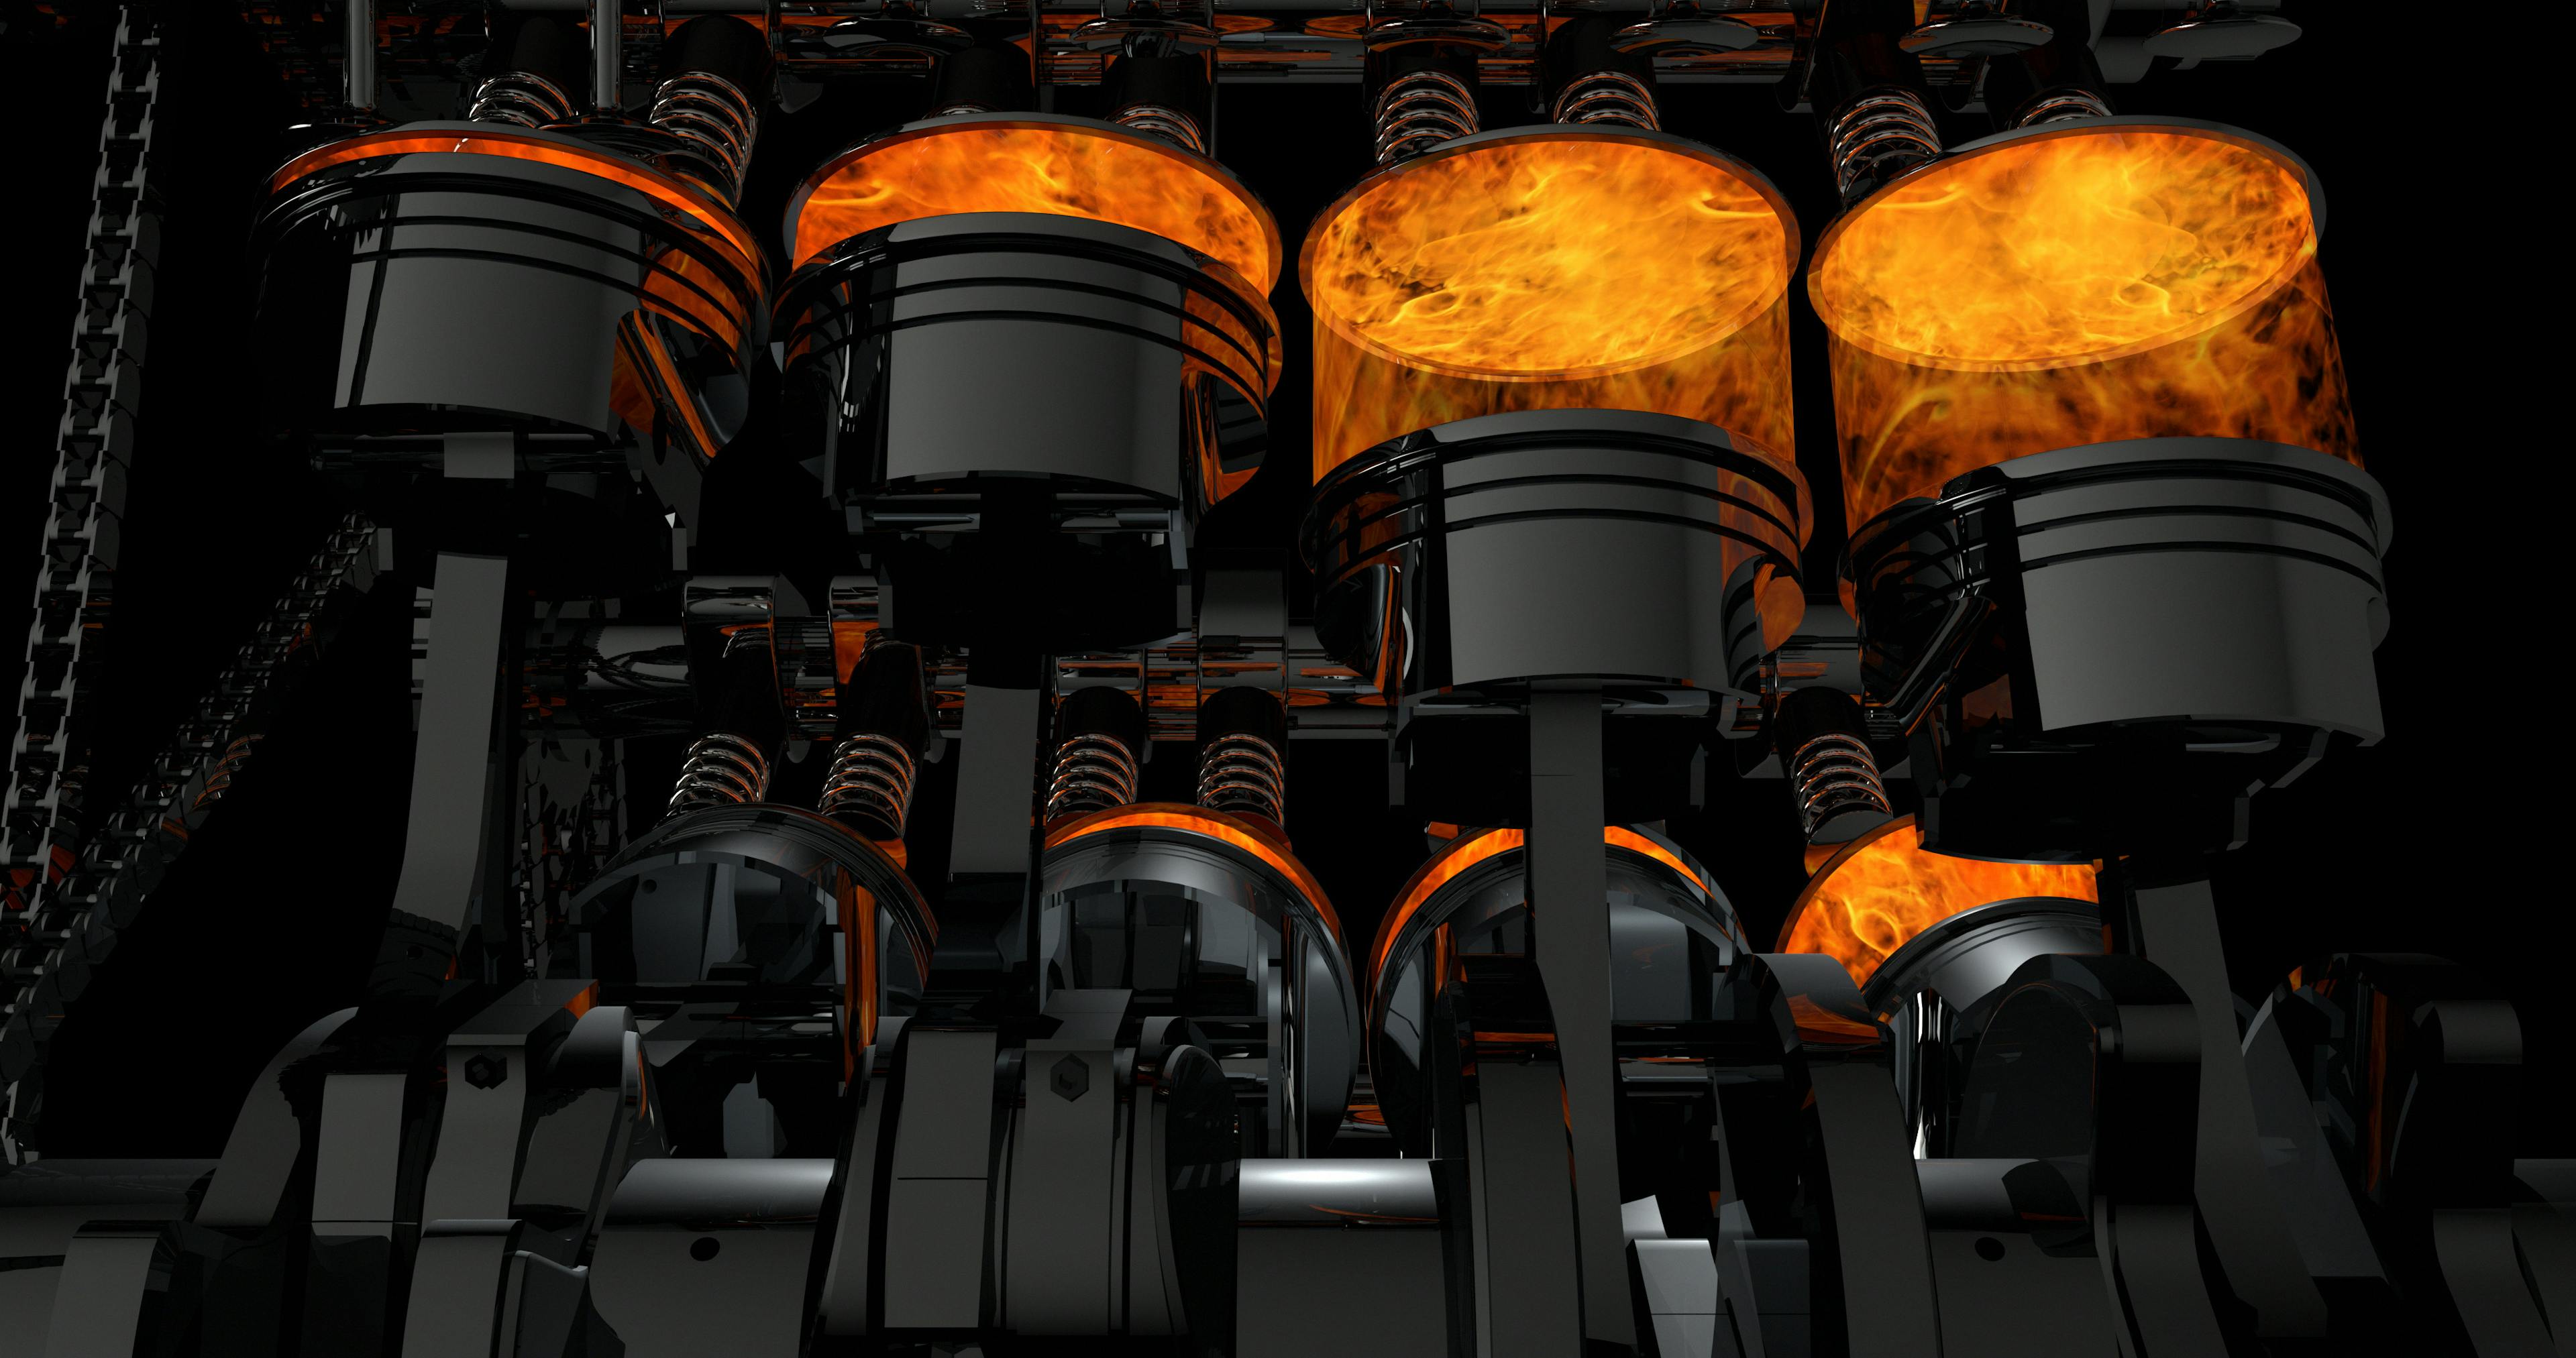 3D-model van een werkende V8-motor. Zuigers en andere mechanische onderdelen zijn in beweging.